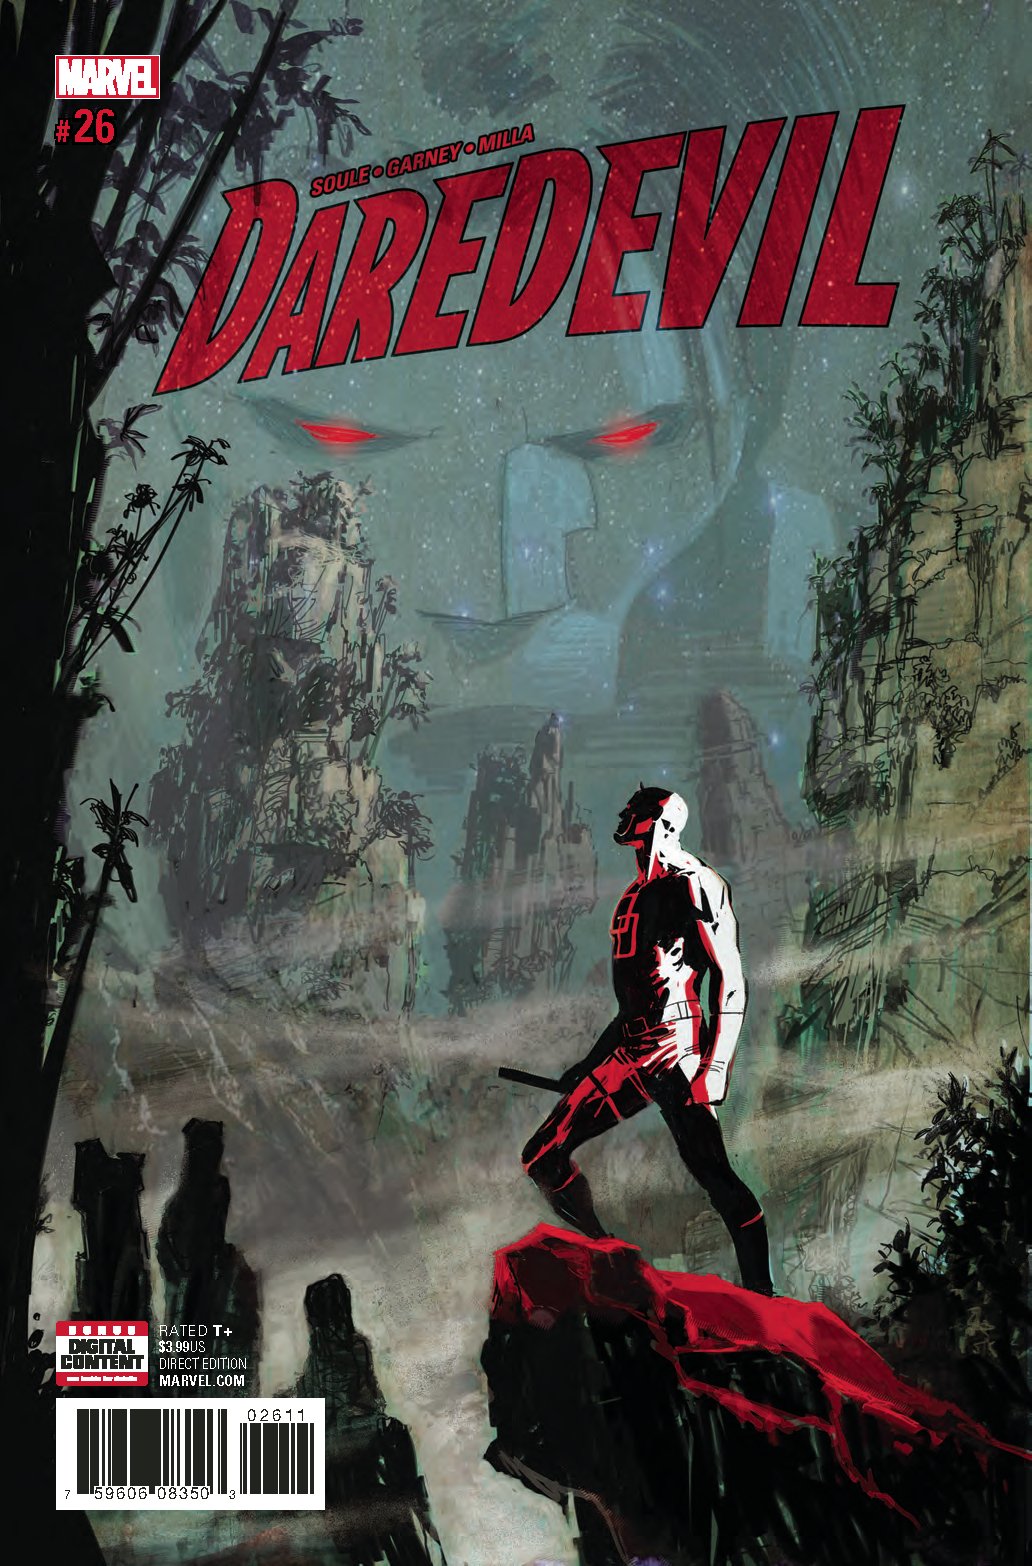 DAREDEVIL #26 COVER